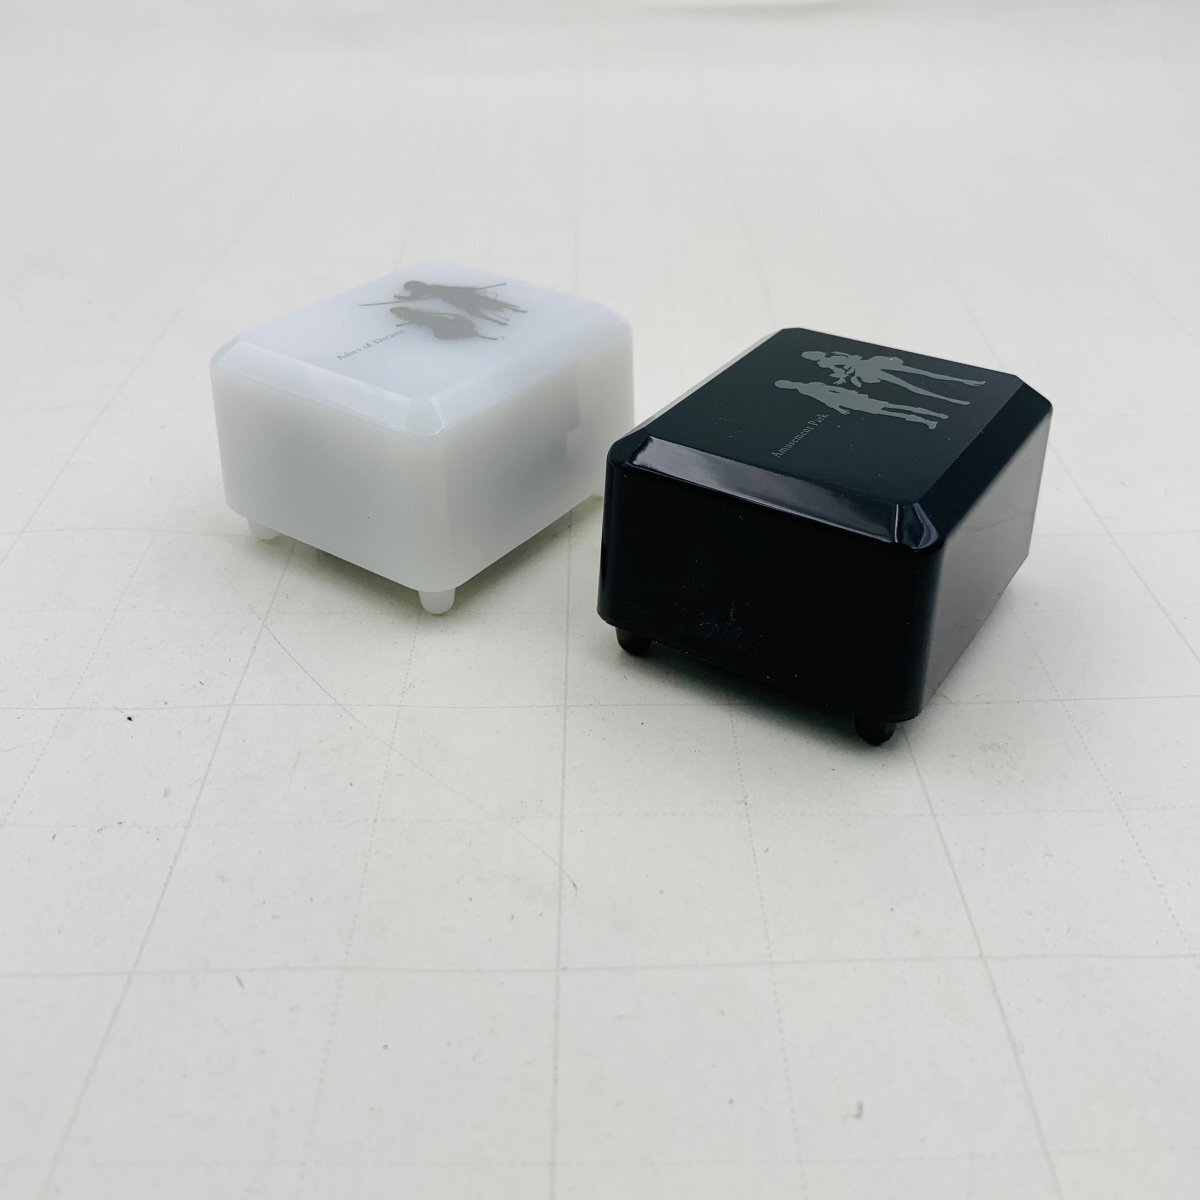 中古品 NieR:automata ニーアオートマタ NieR Replicant ニーア レプリカント MUSIC BOX オルゴール 2種セットの画像4